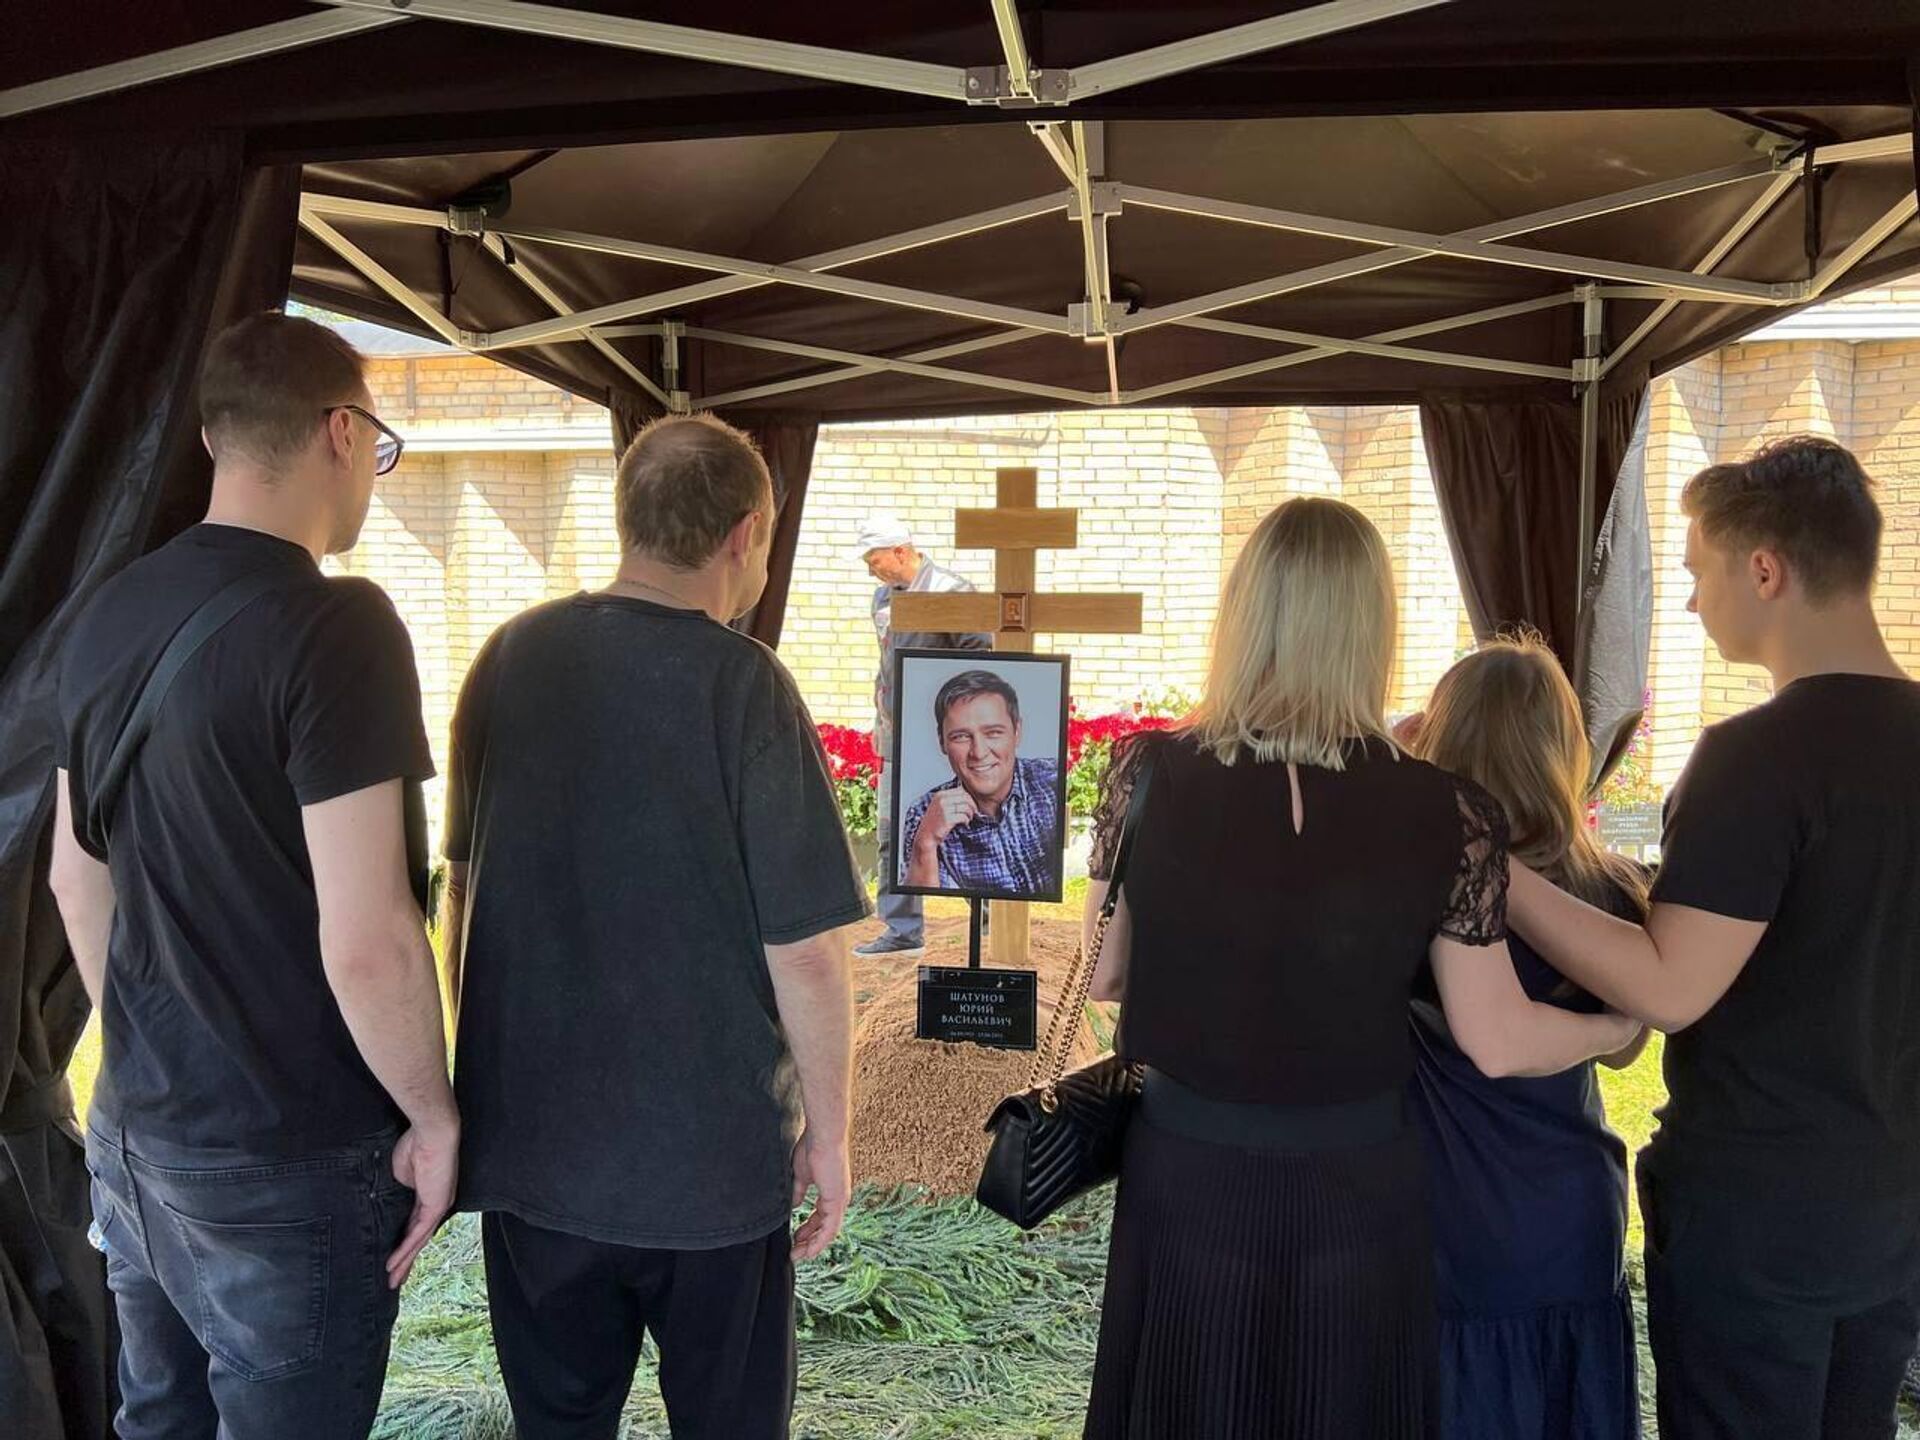 Похороны навального была ли жена и дети